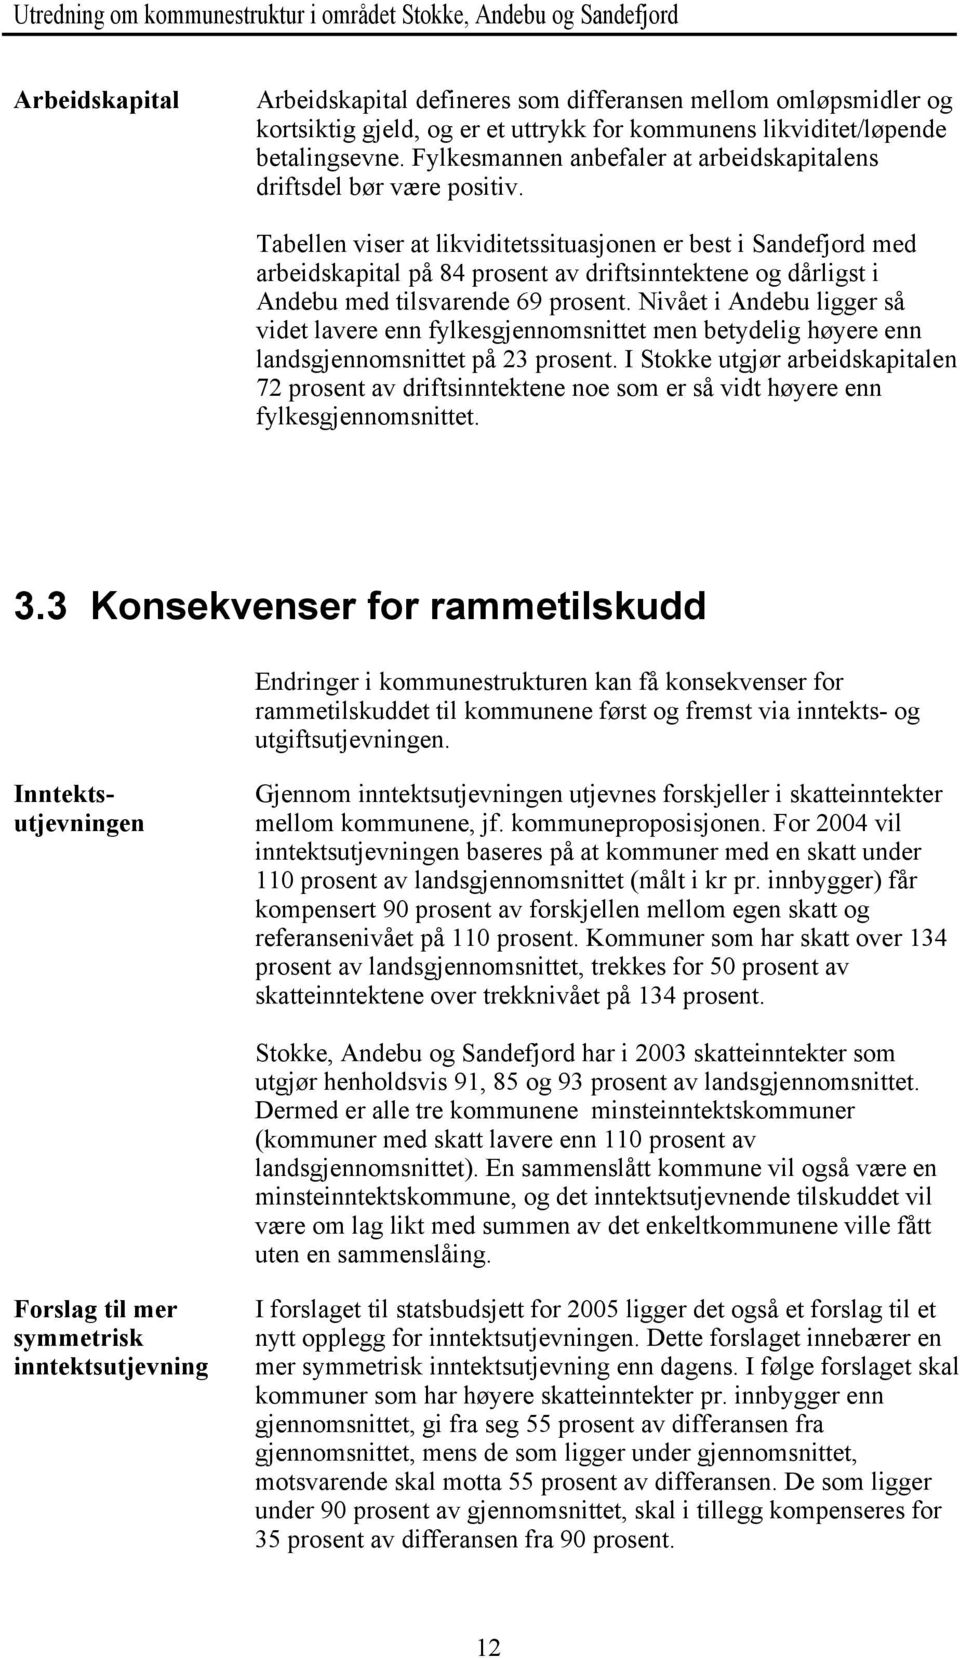 Tabellen viser at likviditetssituasjonen er best i Sandefjord med arbeidskapital på 84 prosent av driftsinntektene og dårligst i Andebu med tilsvarende 69 prosent.